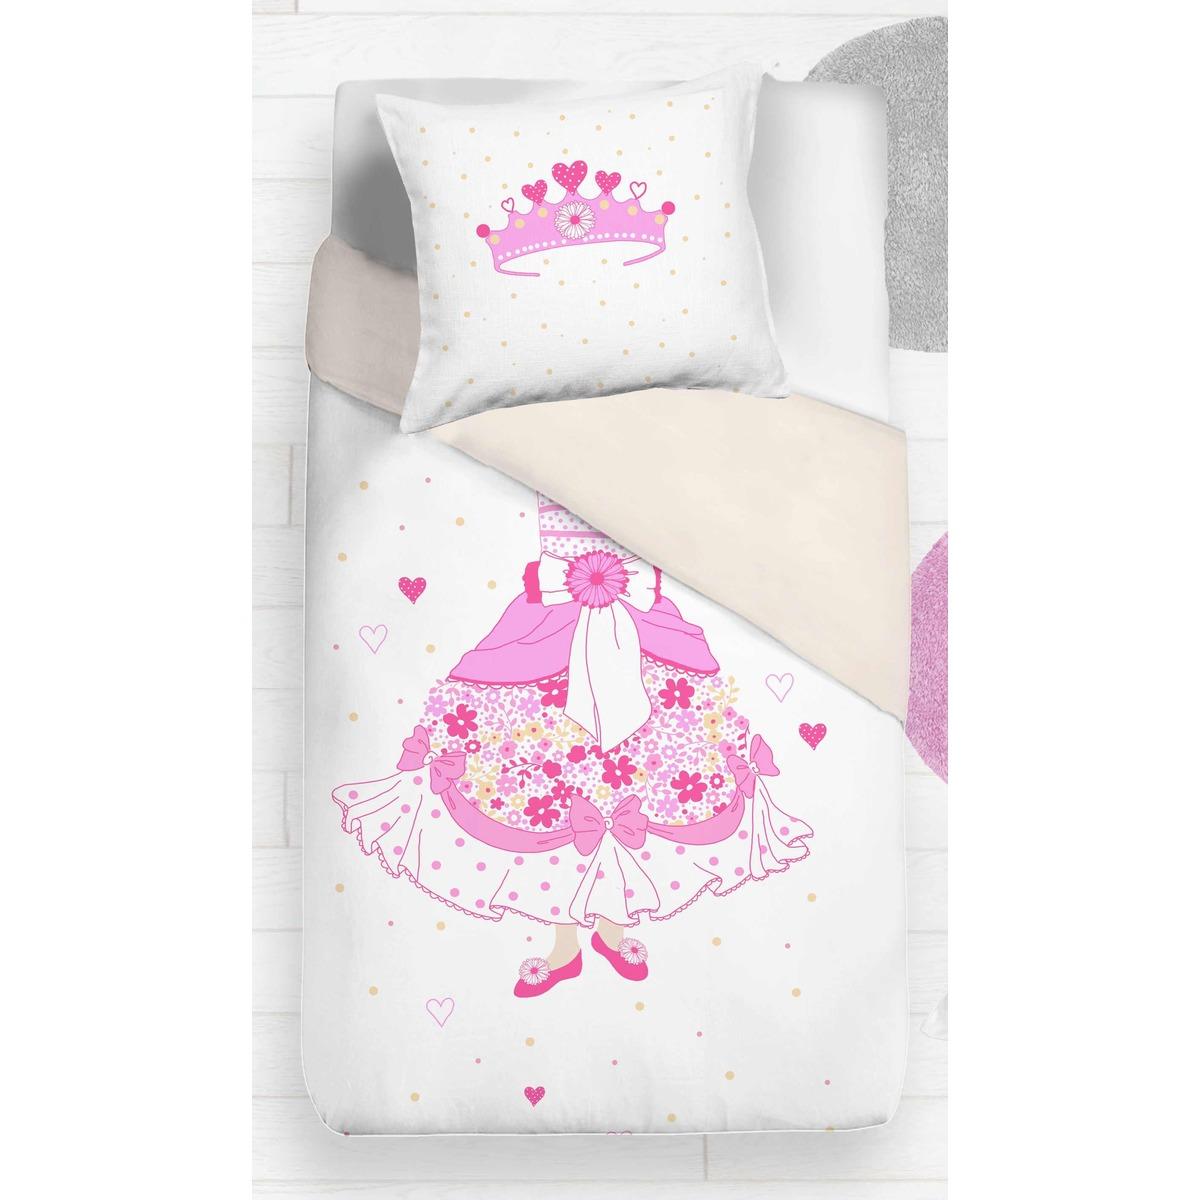 Parure de couette princesse + 1 taie d'oreiller - 140 x 200 cm - Blanc, Rose